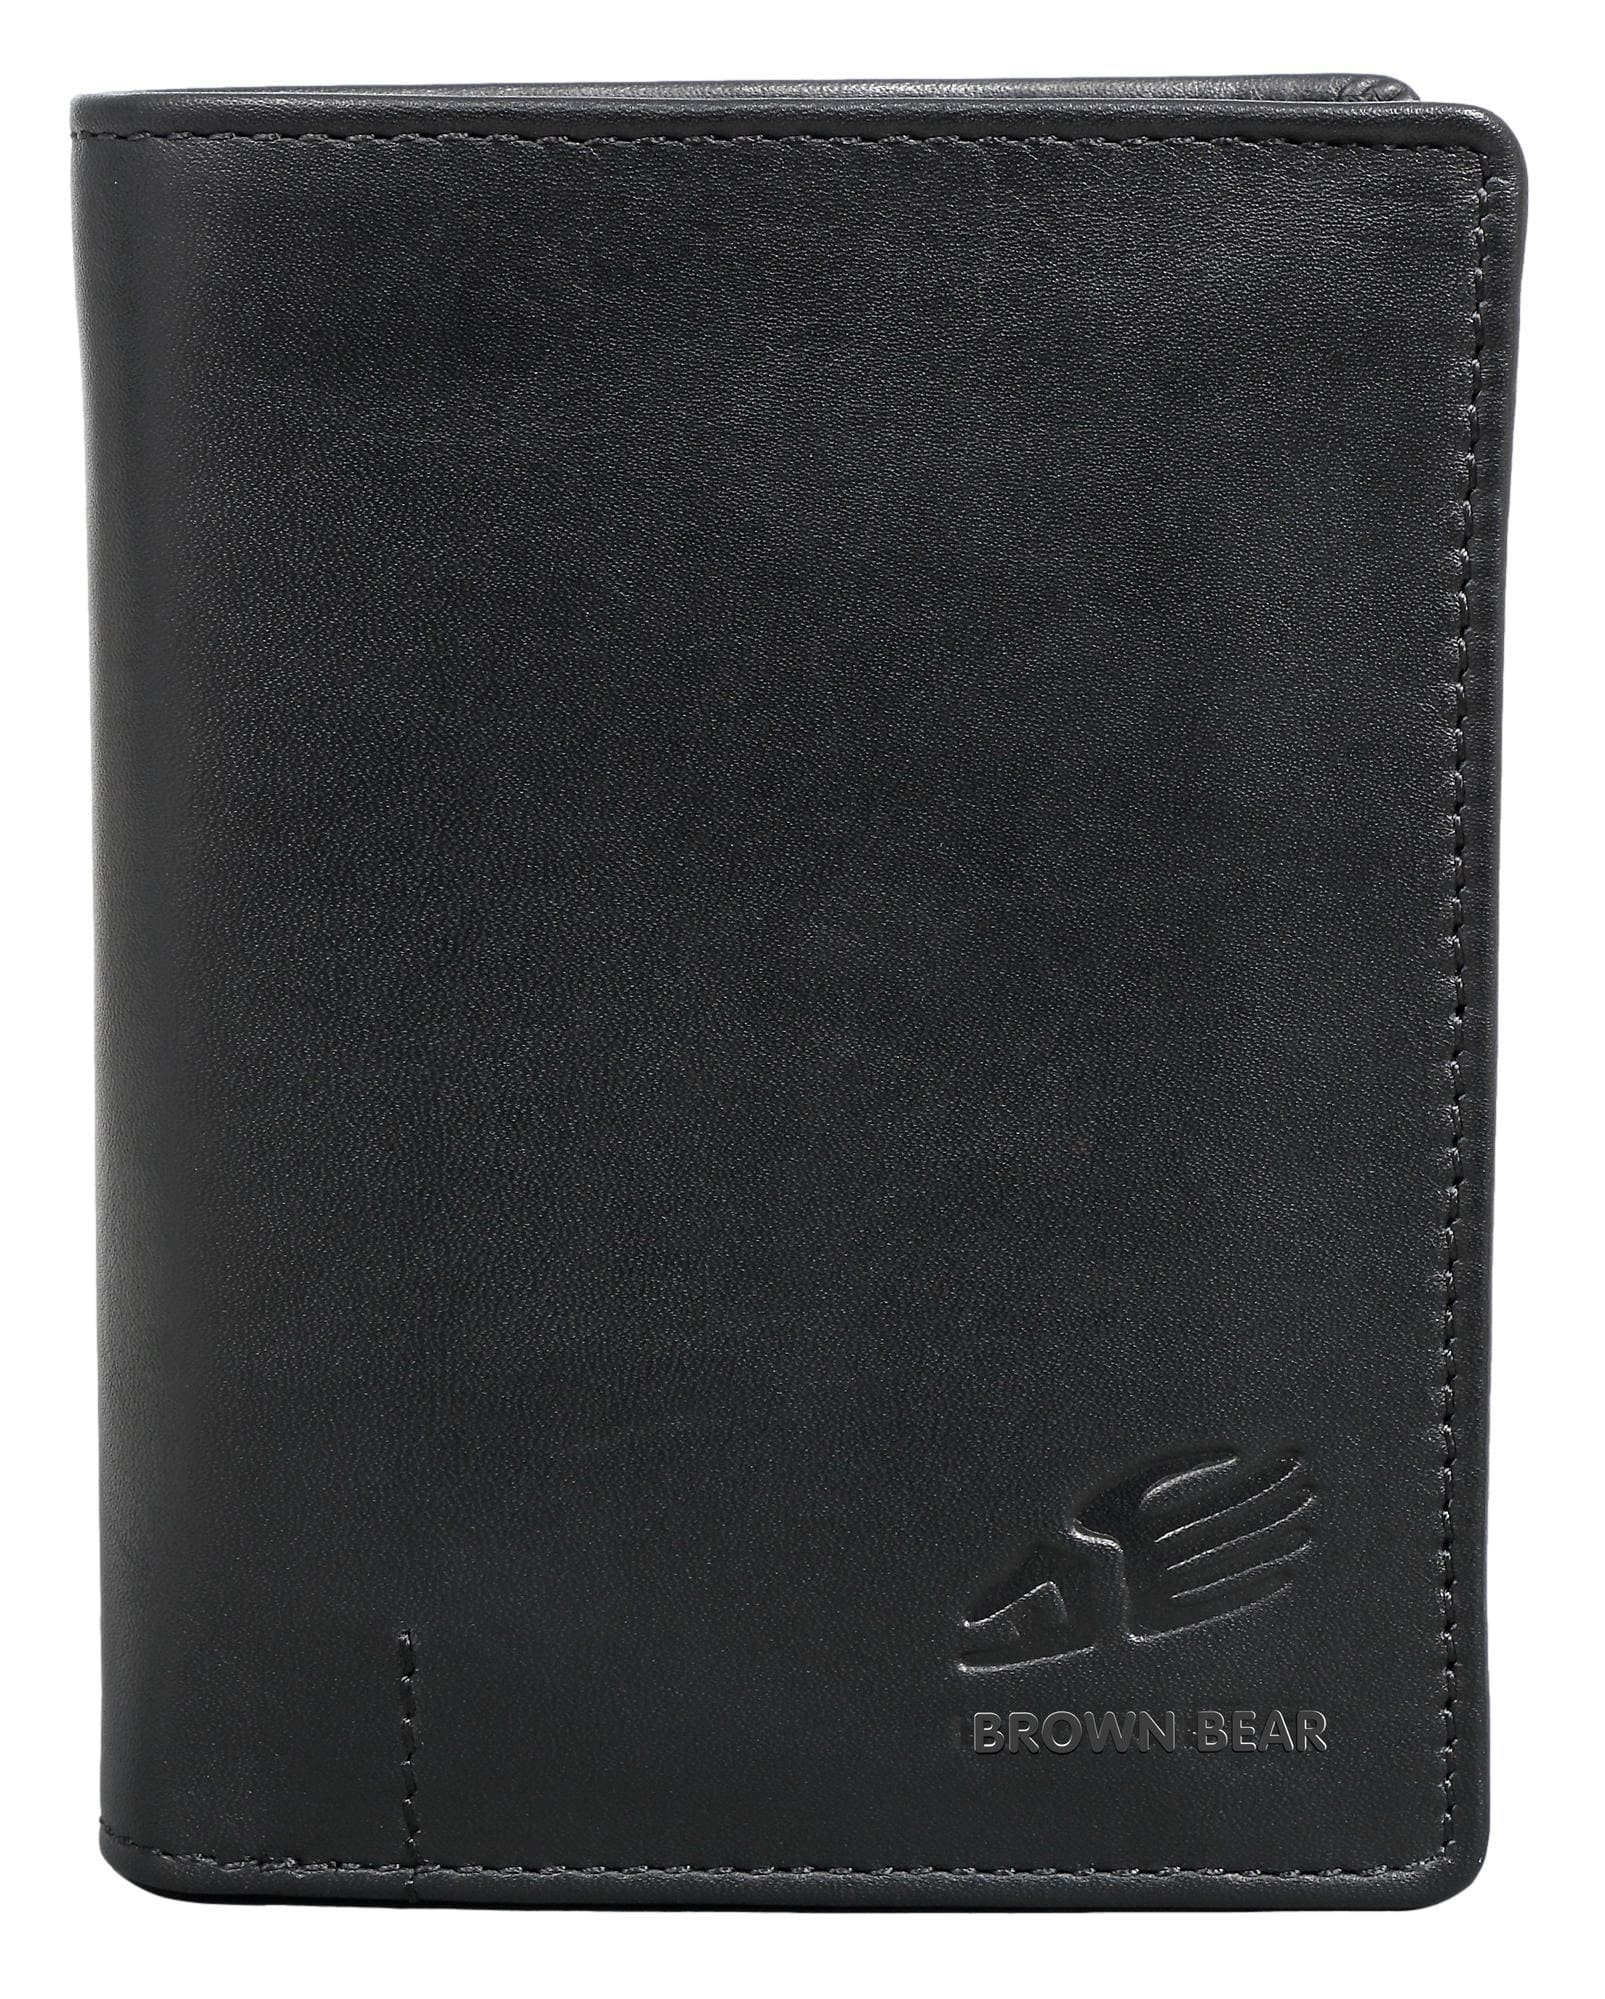 Brown Bear Geldbörse IBP 2051 Reißverschlussinnenfach Unisex Echtleder, 11 Kartenfächer Sichtfach RFID Schutz Schwarz